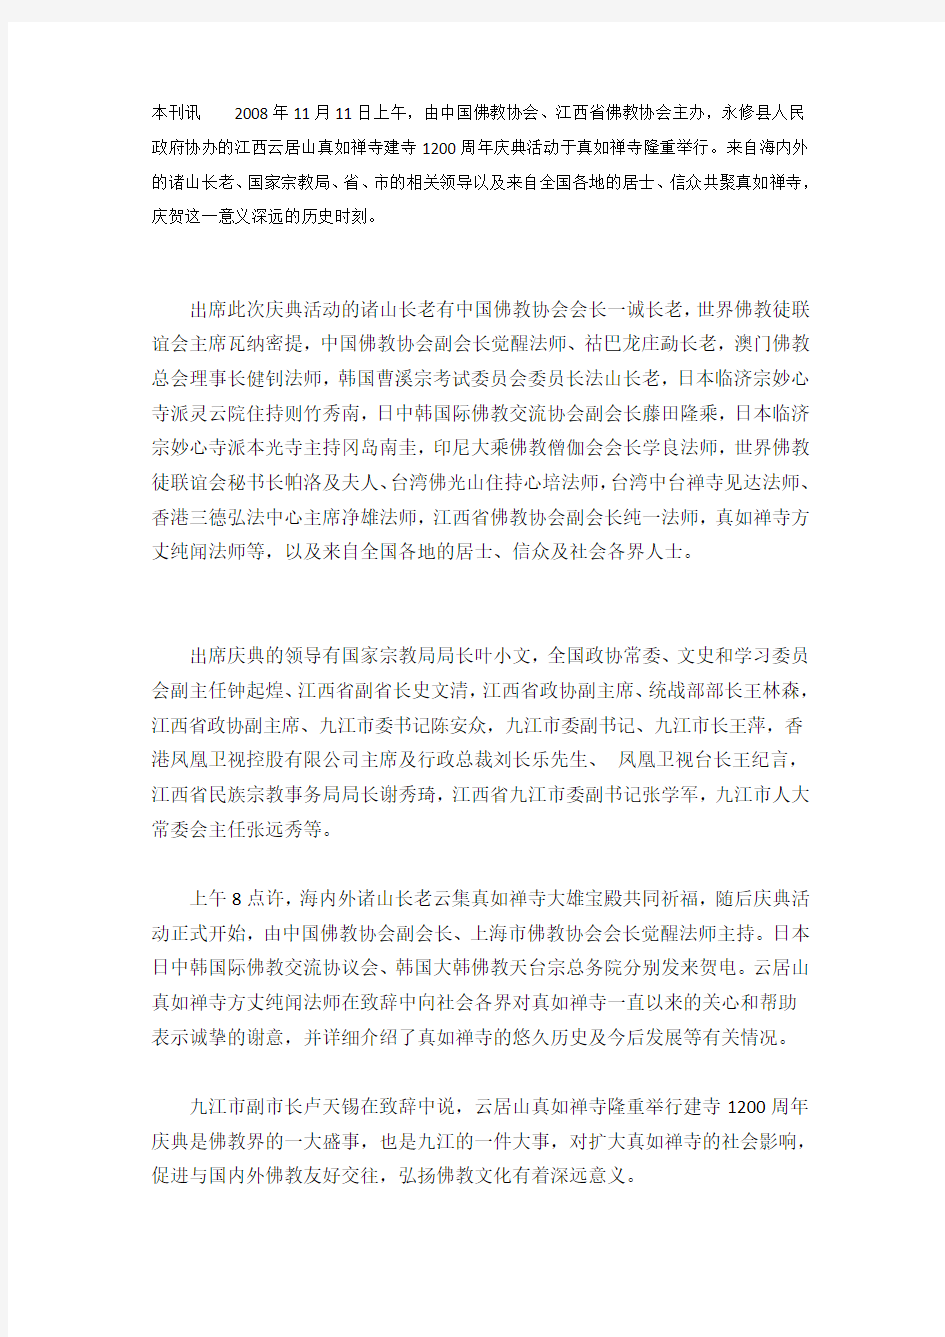 本刊讯2008年11月11日上午,由中国佛教协会、江西省佛教协会主办